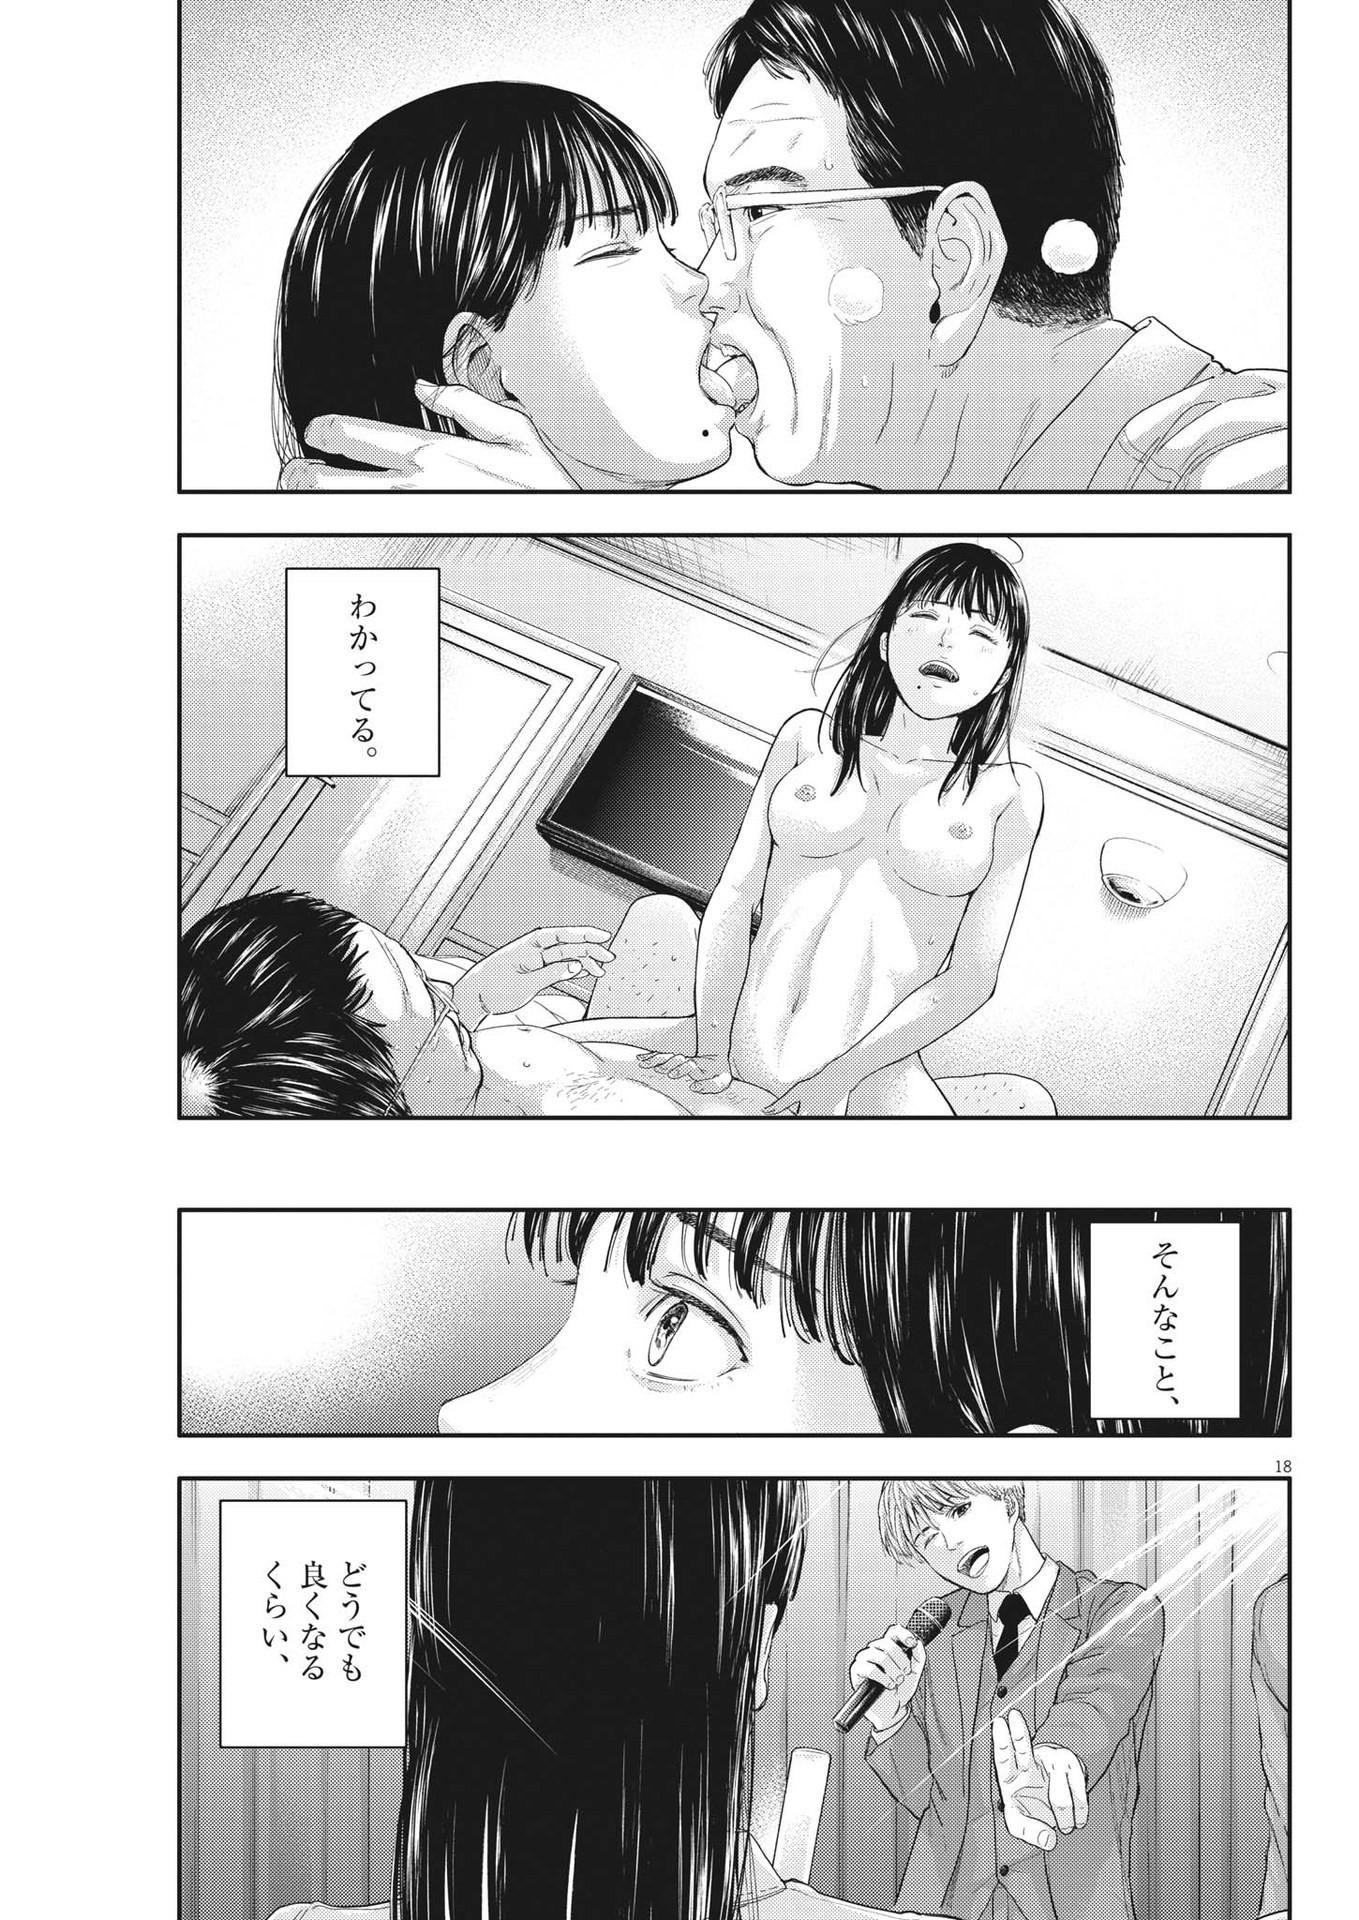 Yumenashi-sensei no Shinroshidou - Chapter 12 - Page 19